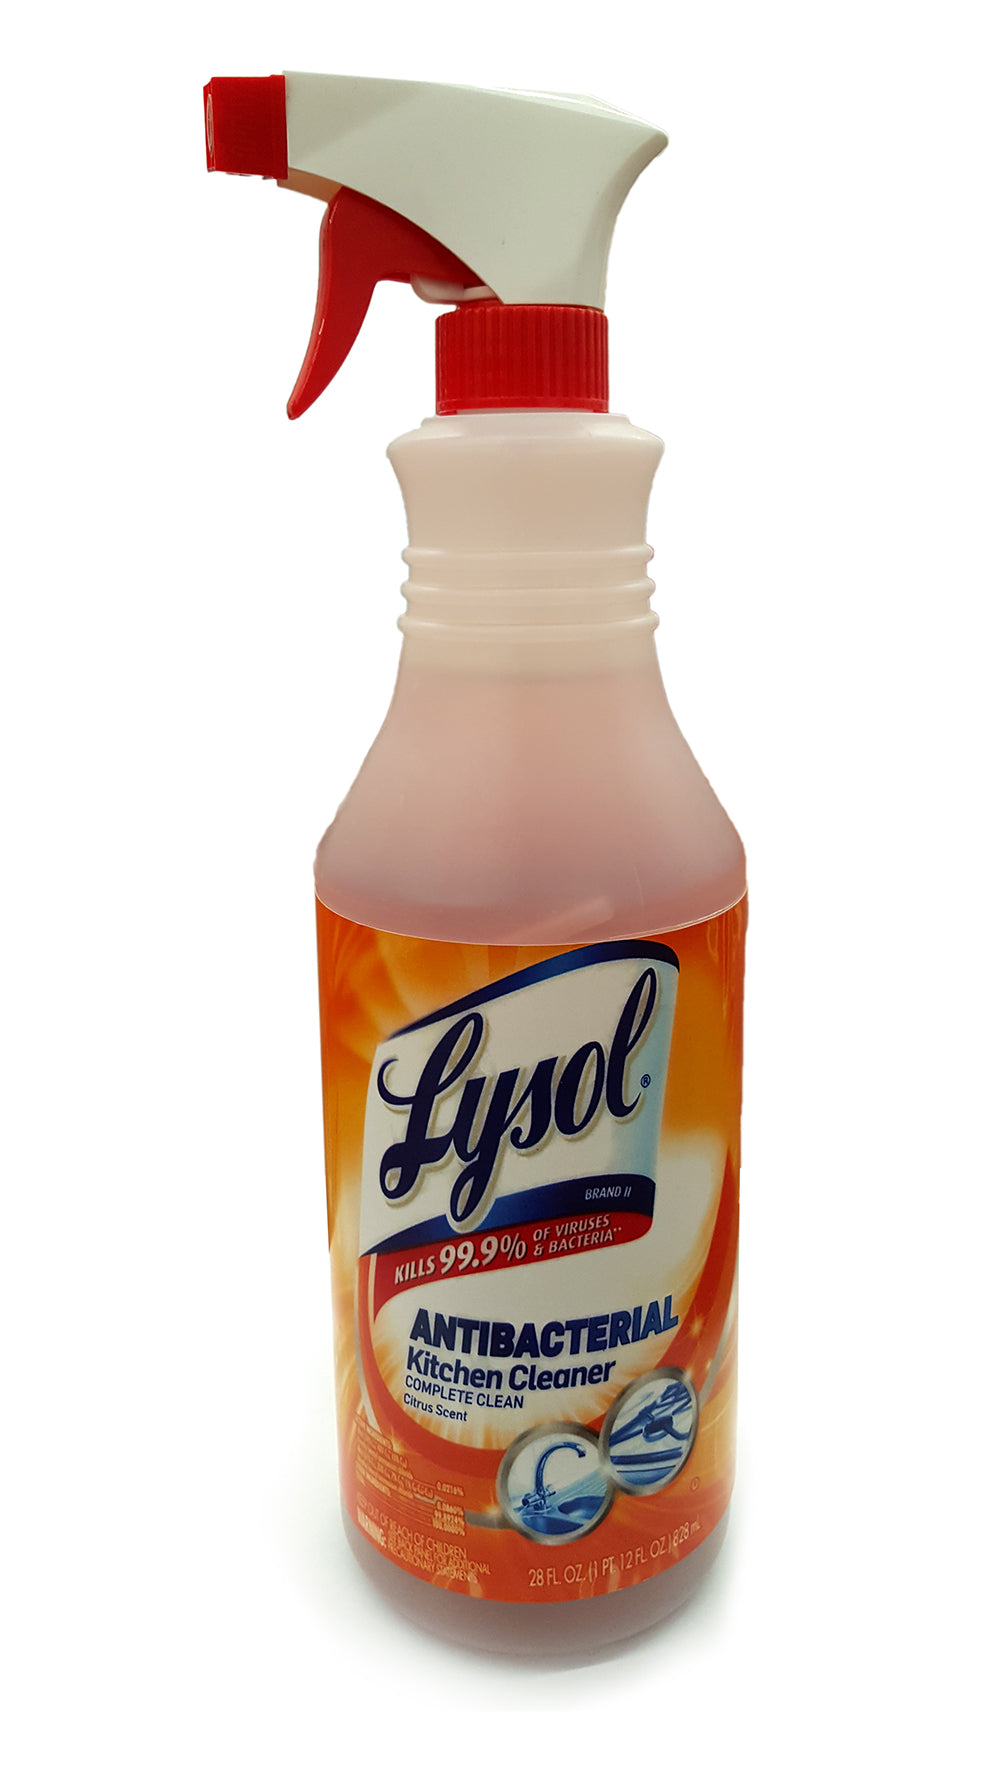 Lysol Antibacterial Kitchen Cleaner Spray Diversion Safe 87 ?v=1506490065